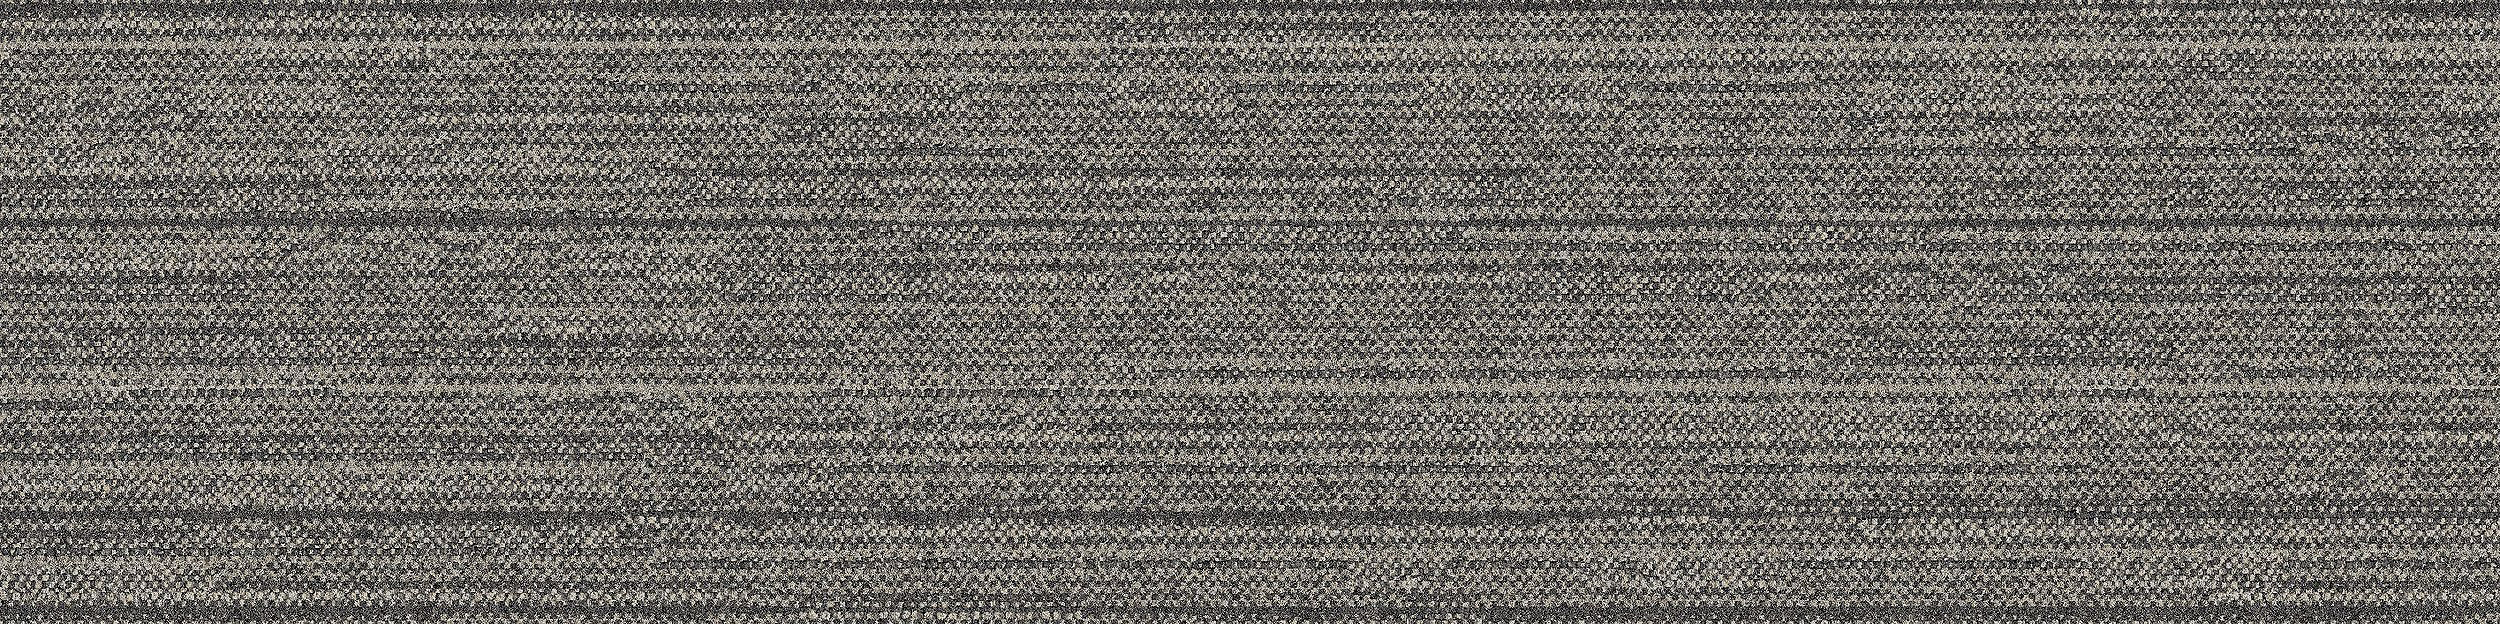 WW880 Carpet Tile In Natural Loom imagen número 8